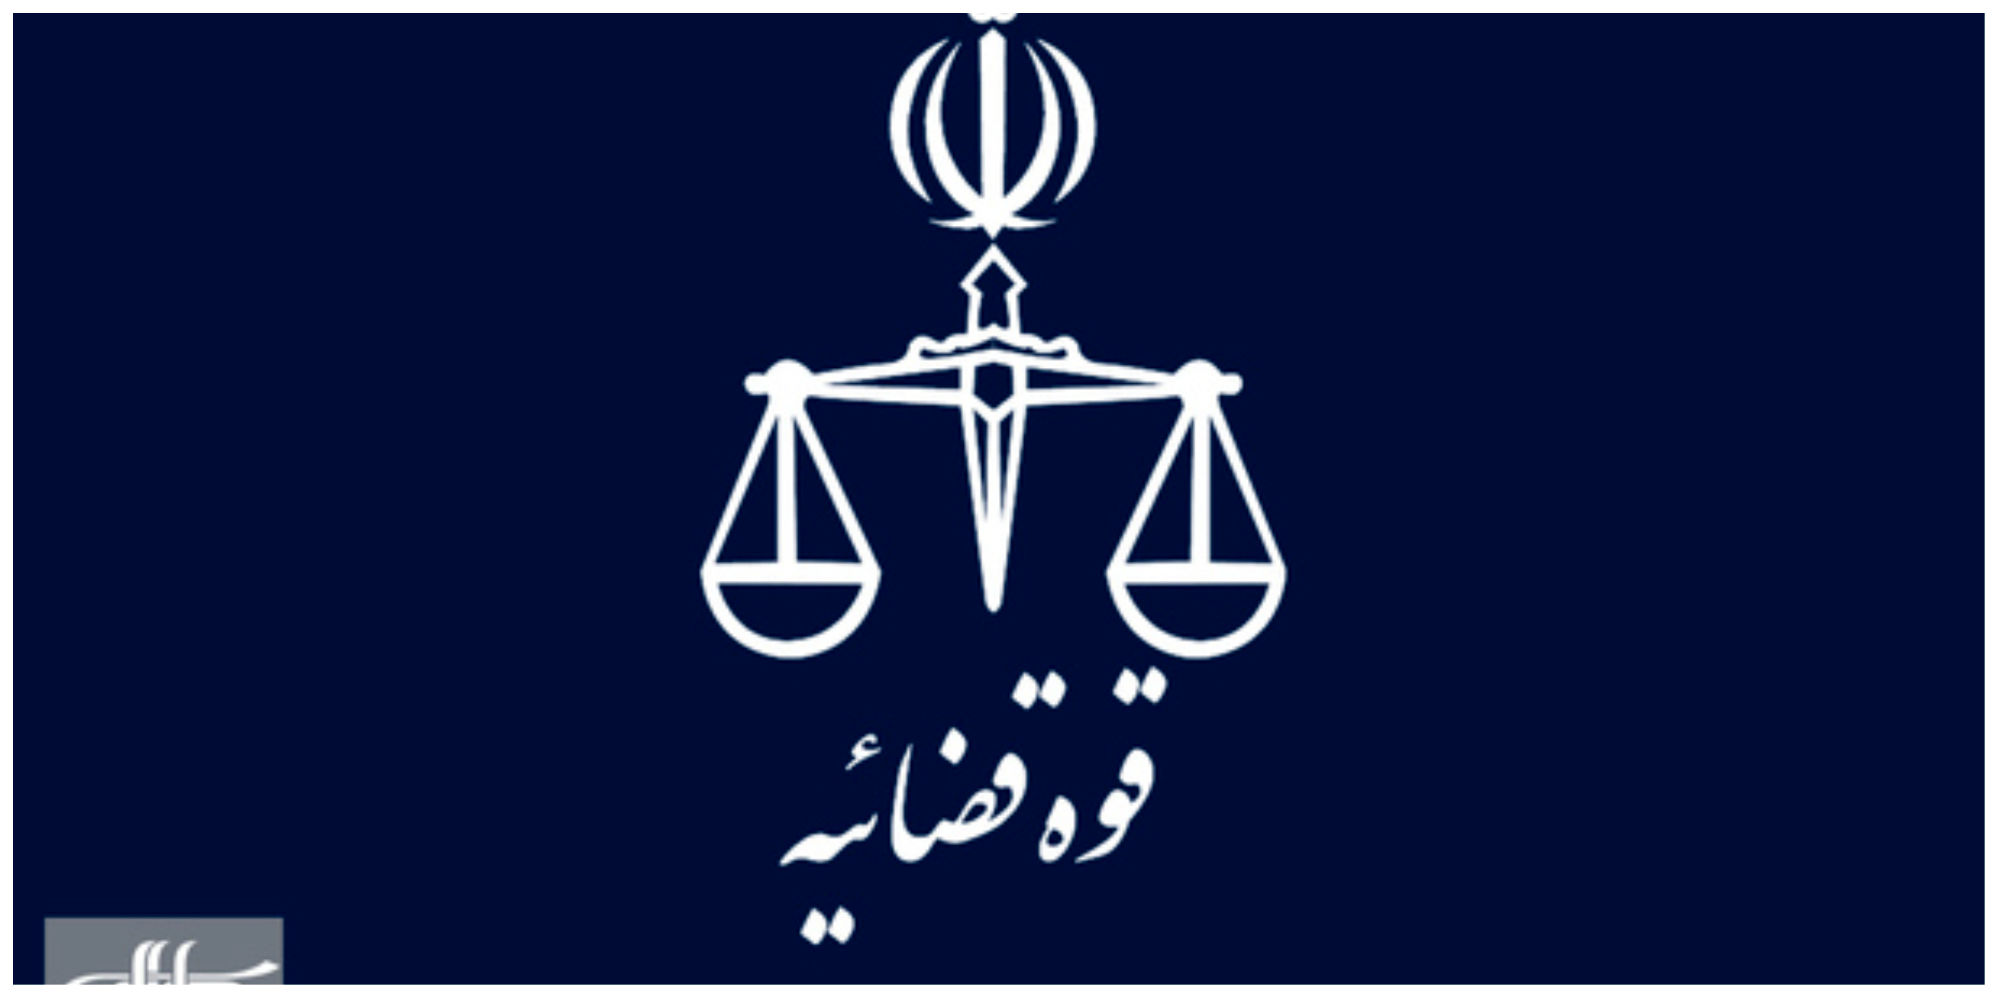 خبرگزاری قوه قضائیه: دو فعال اینستاگرامی به پنج سال حبس محکوم شدند